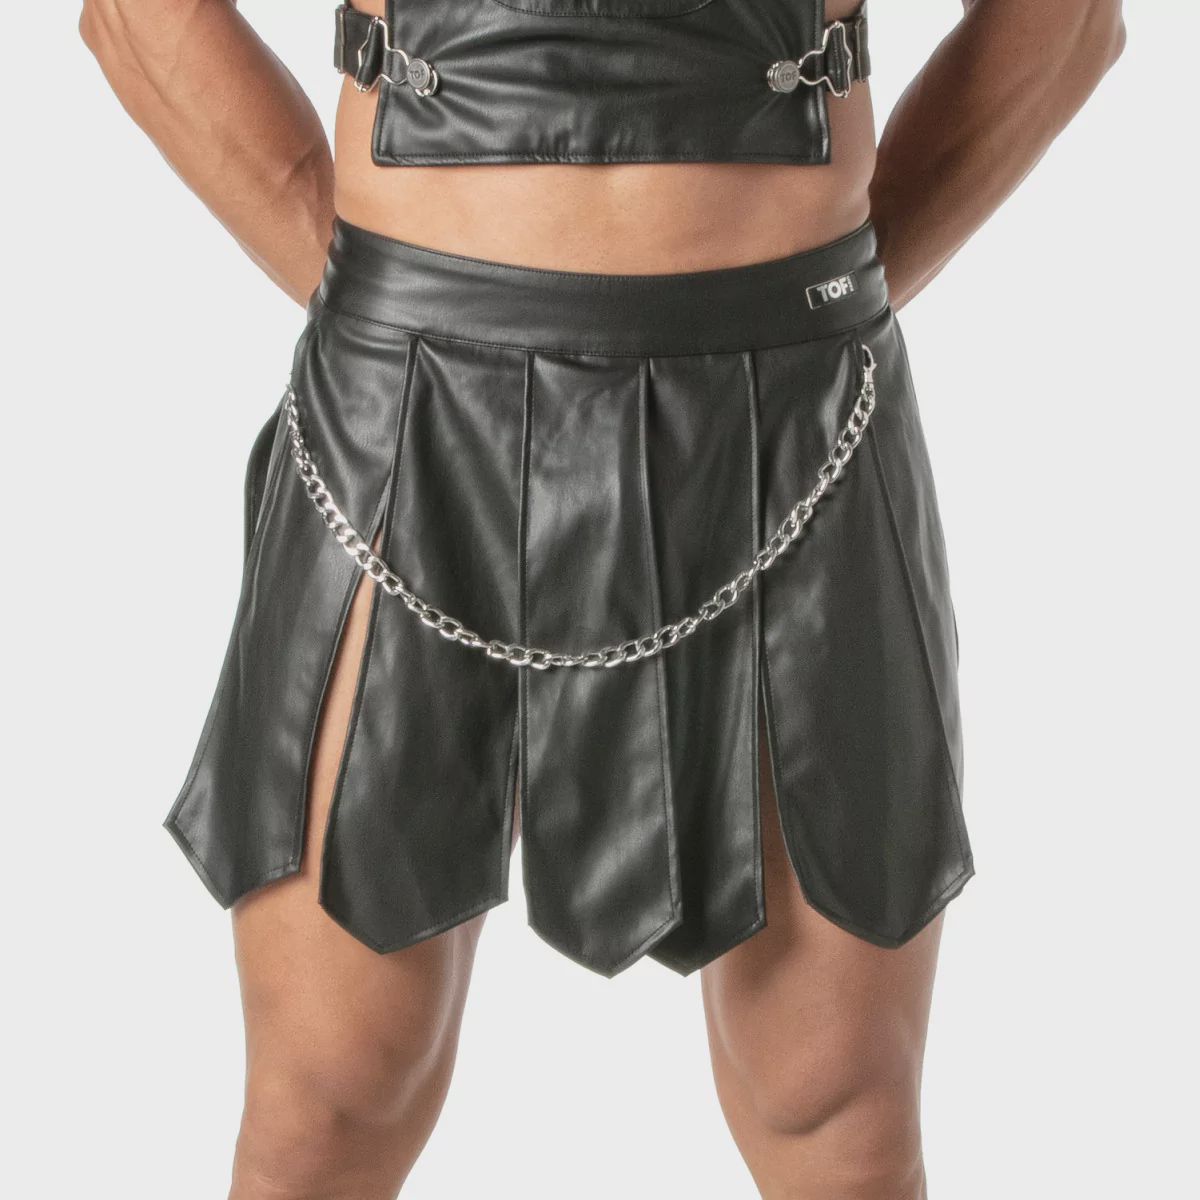 kinky-gladiator-skirt-for-men (1).jpg